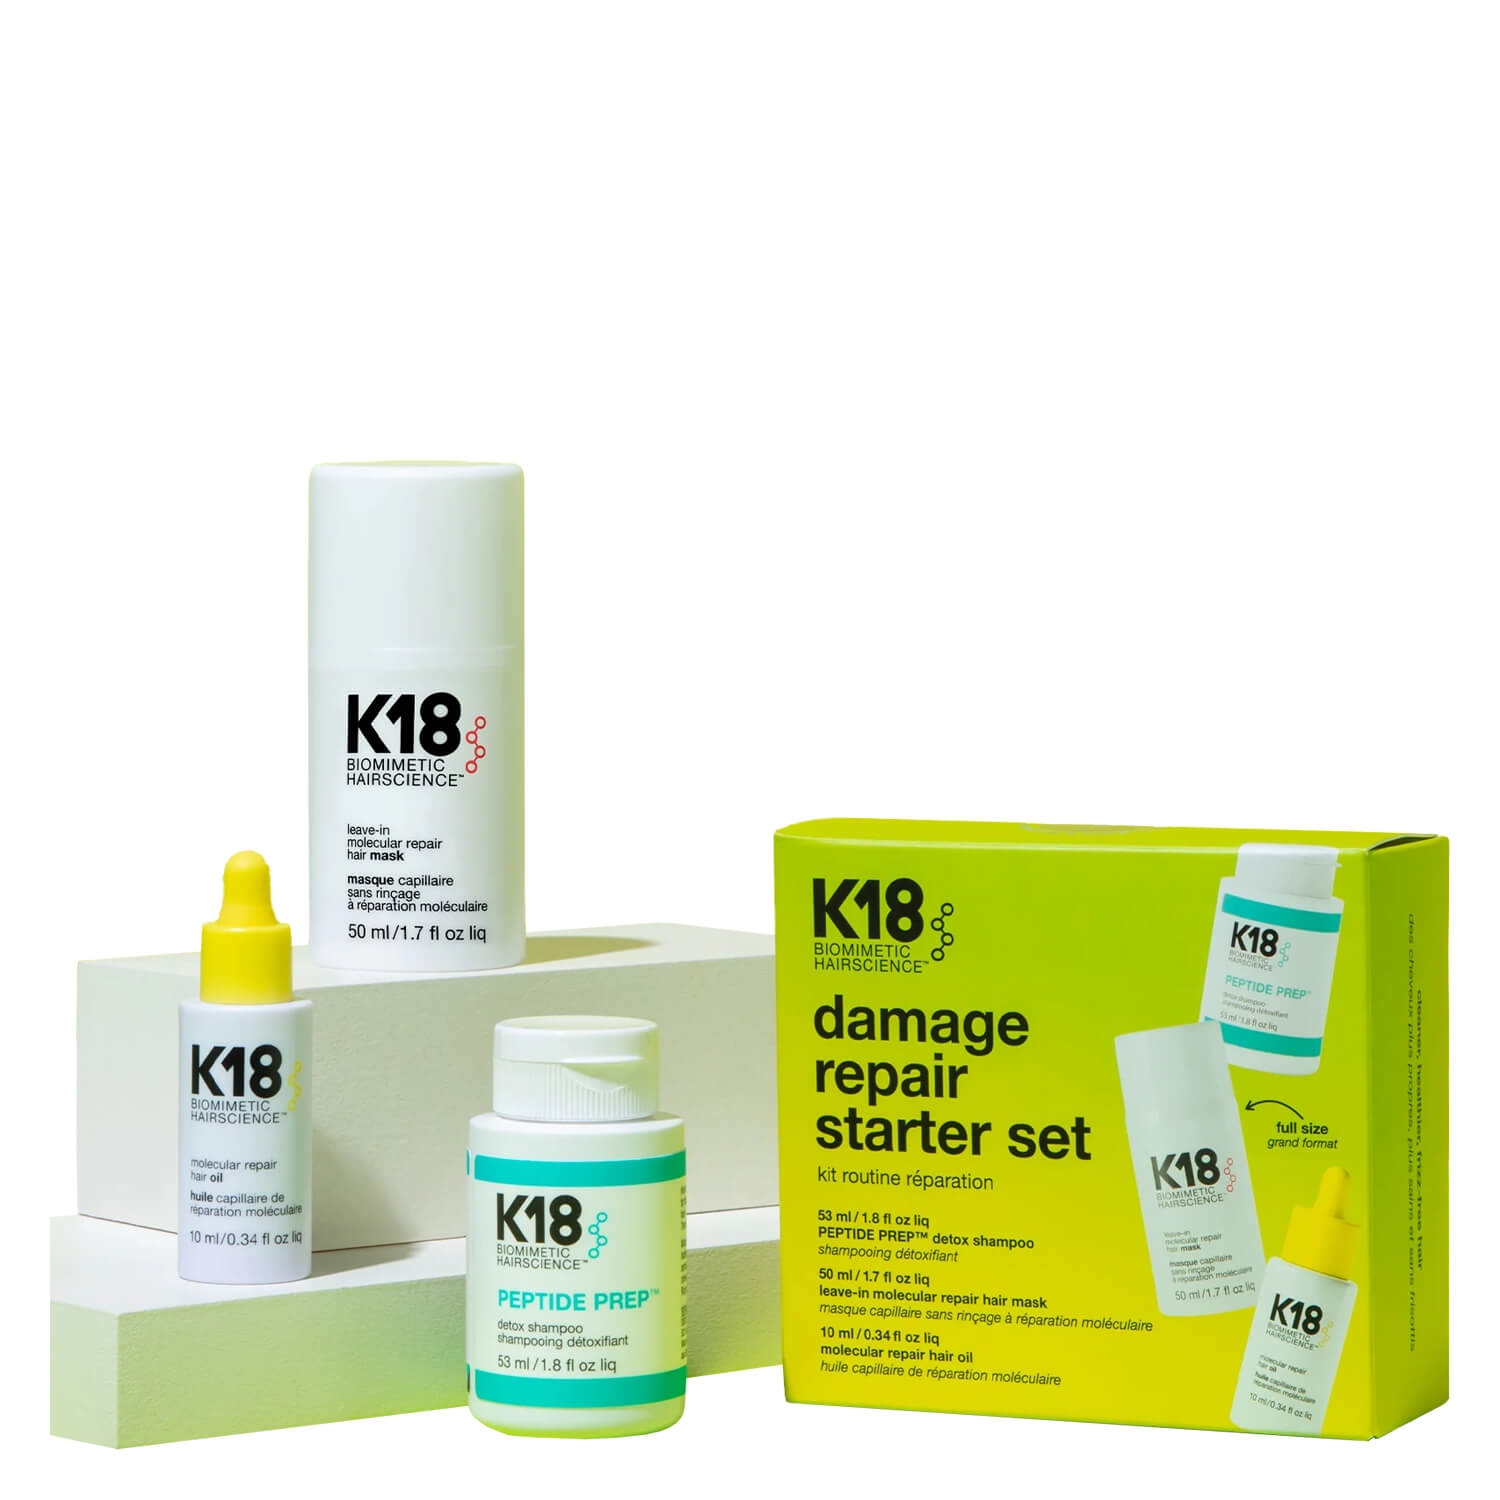 Produktbild von K18 Biomimetic Hairscience - damage repair starter set